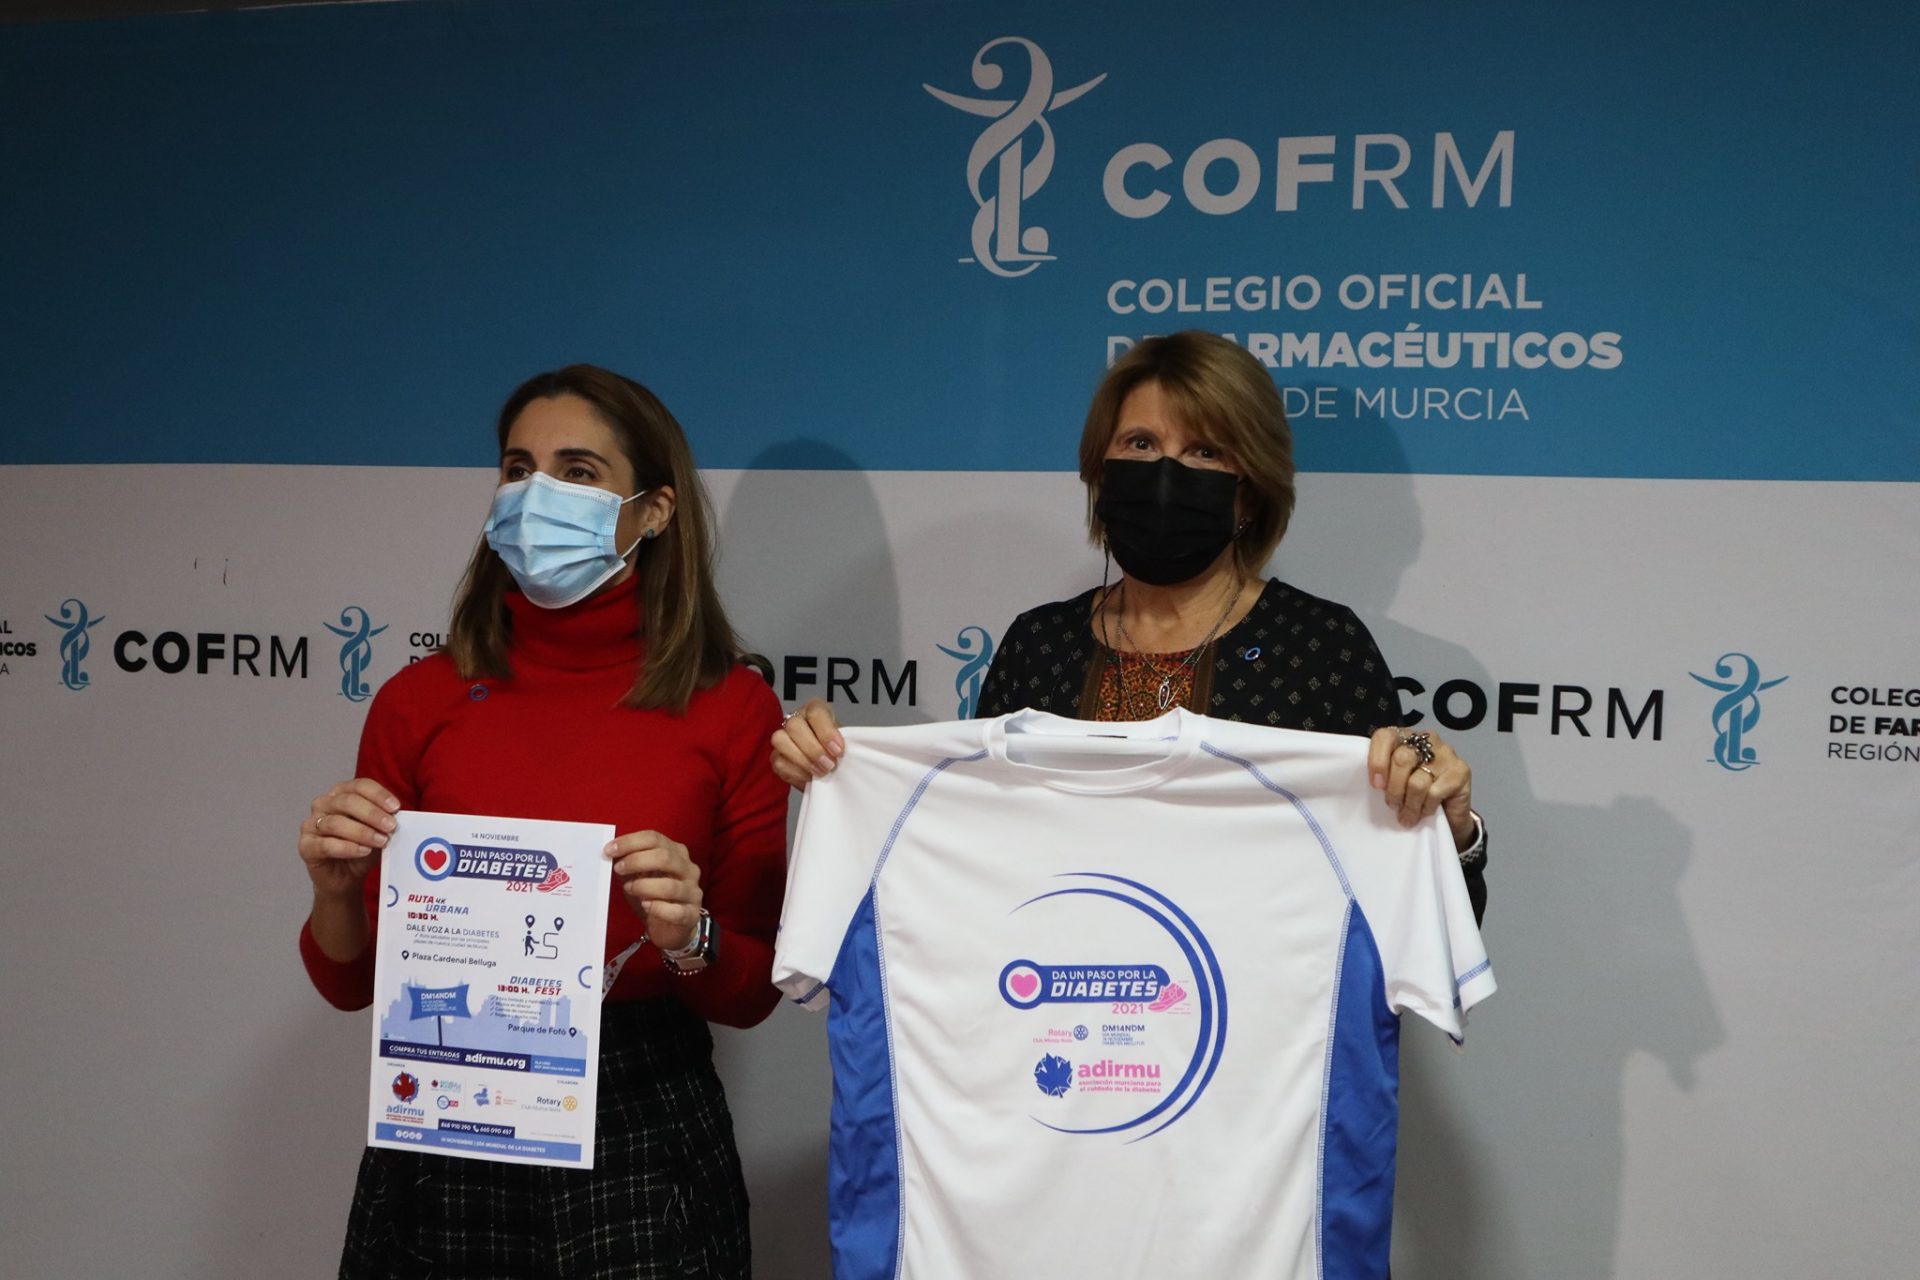 El COFRM y la Asociacion Murciana para el Cuidado de la Diabetes ADIRMU firman un convenio de colaboracion para mejorar la calidad de vida de las personas diabeticas 4